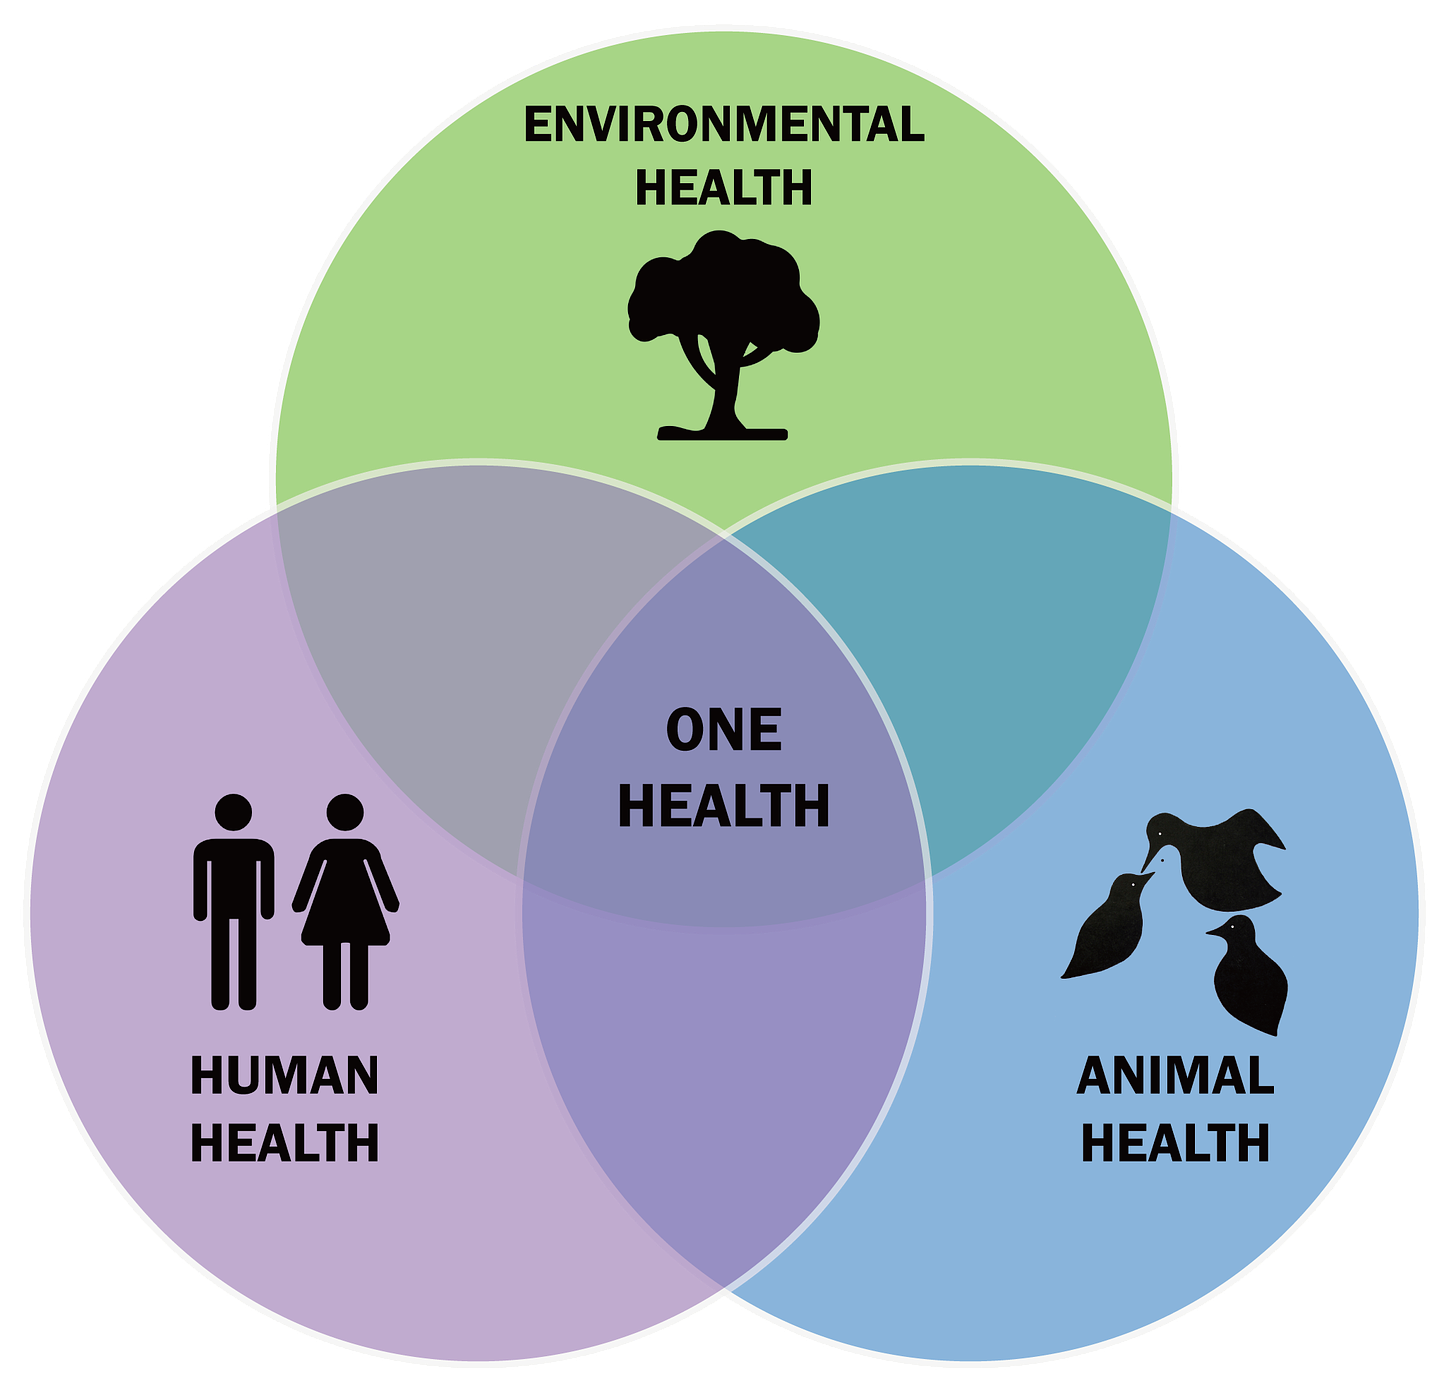 One Health Venn Diagram where environmental health, animal health and human health all overlap